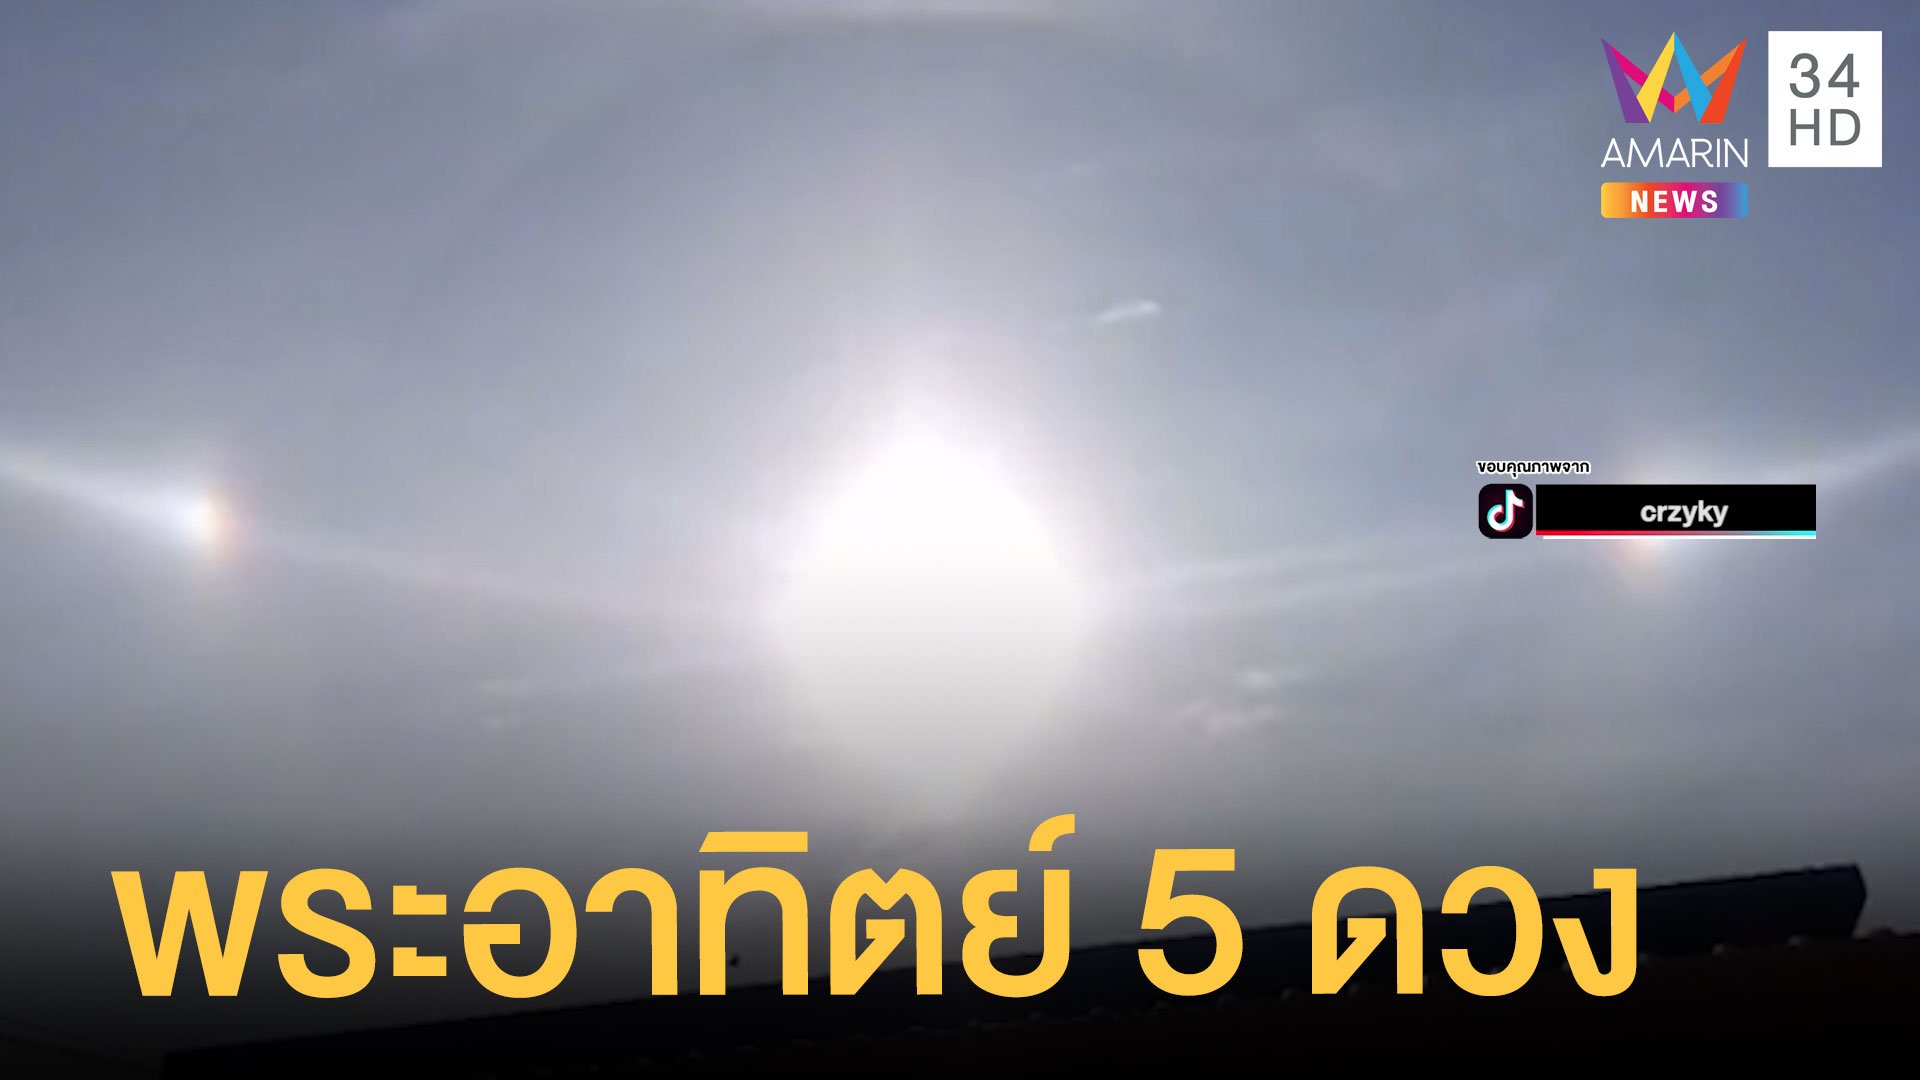 สาวถ่ายคลิปนับพระอาทิตย์ 5 ดวง คนแก่บอกเกิดมาเพิ่งเคยเห็น | ข่าวอรุณอมรินทร์ | 14 มิ.ย. 65 | AMARIN TVHD34